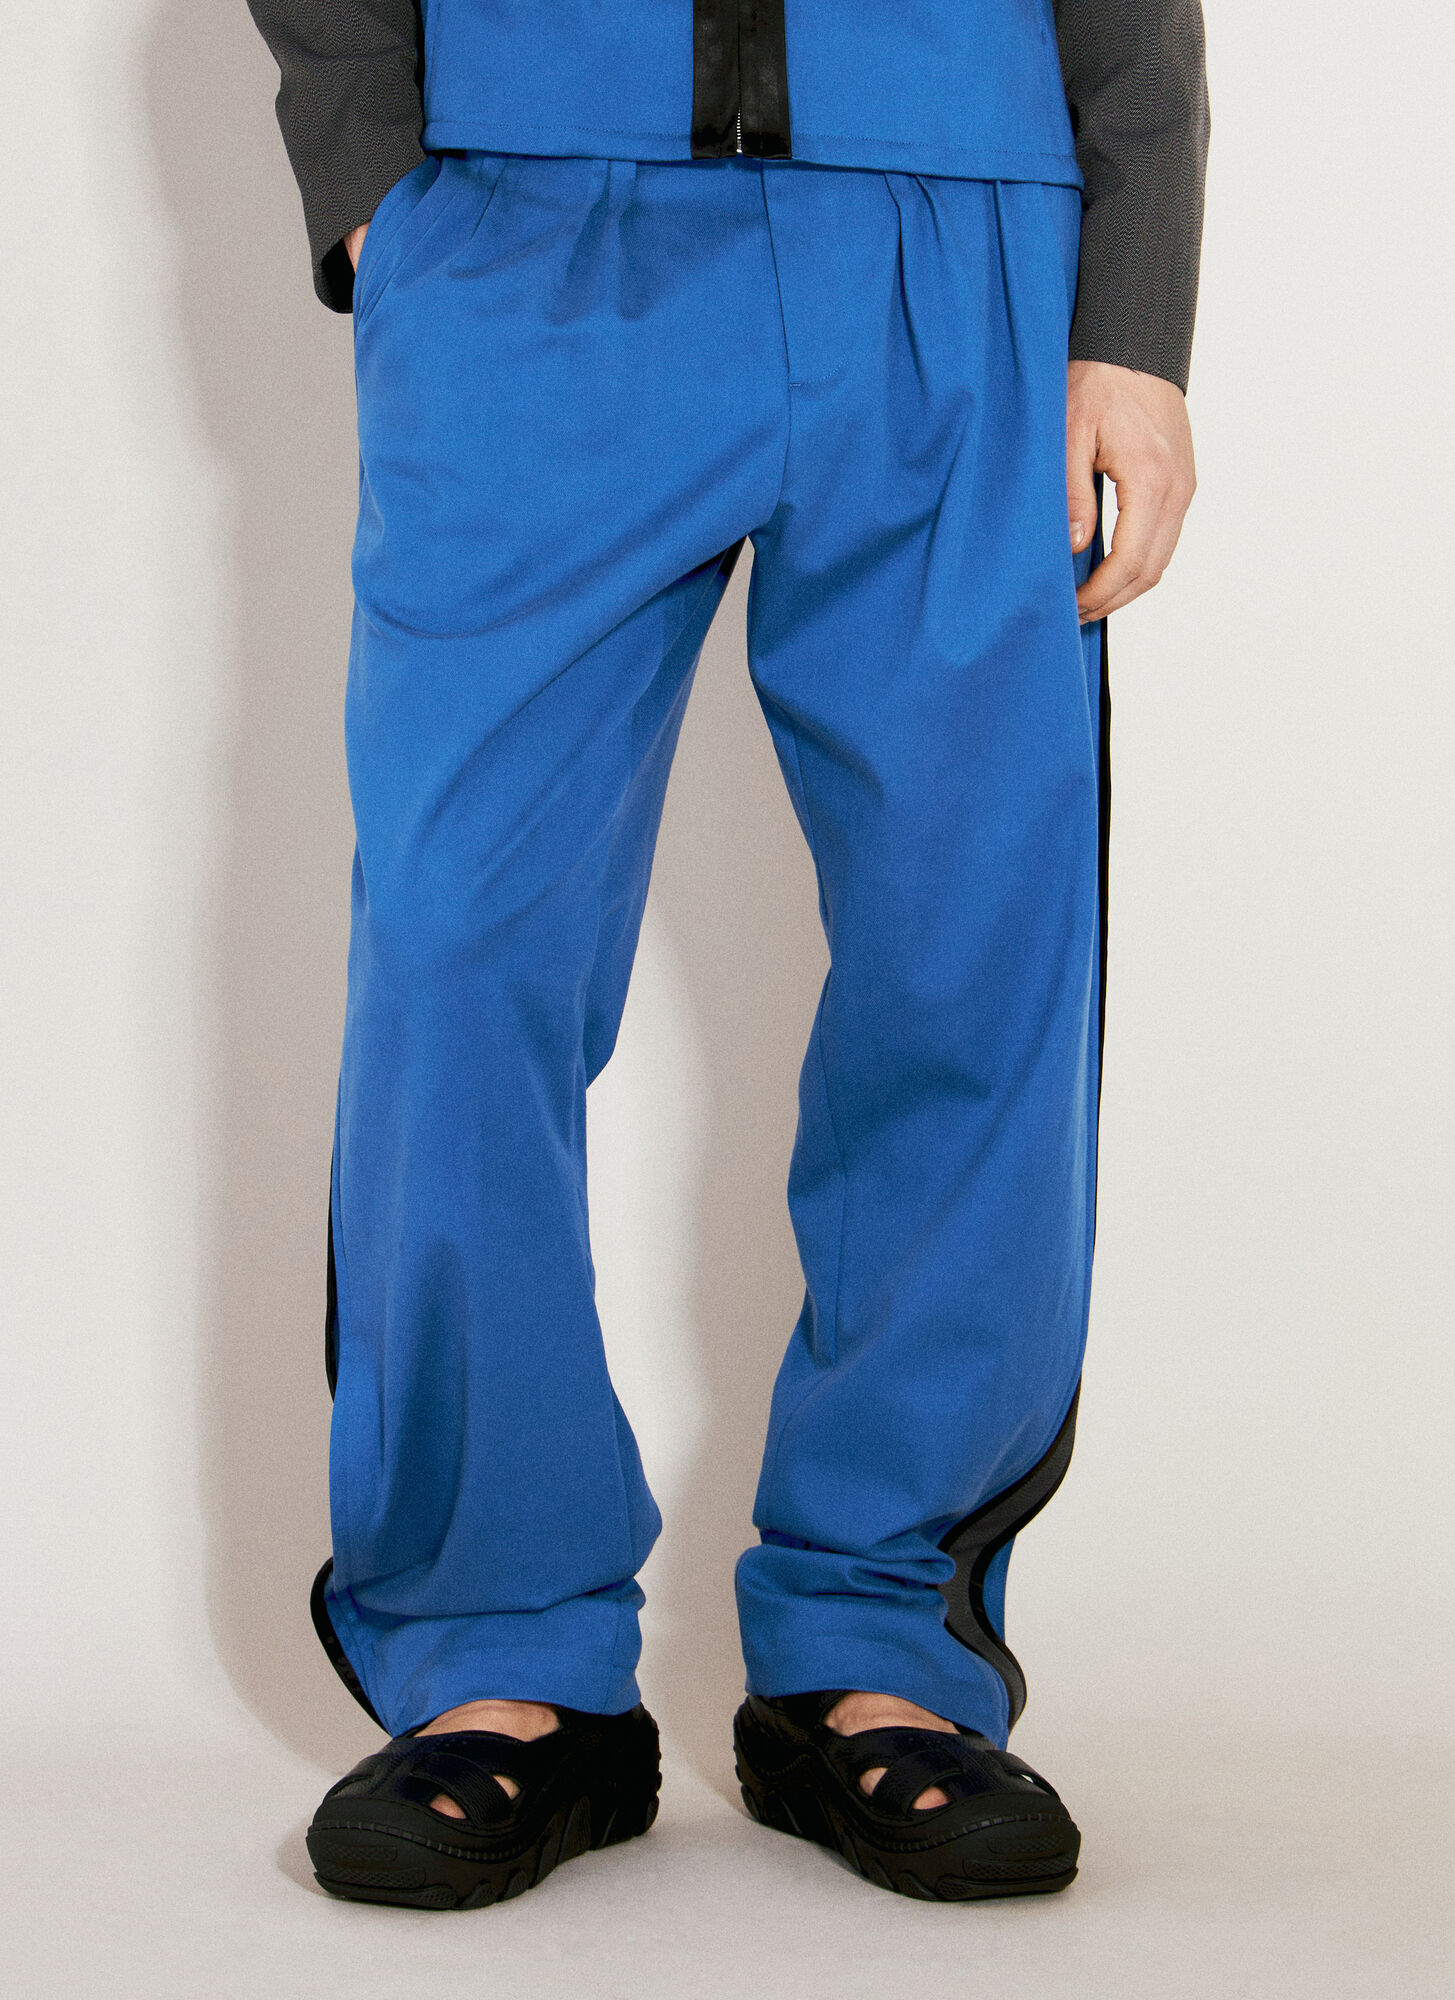 Kiko Kostadinov Ugo Side Trousers In Blue